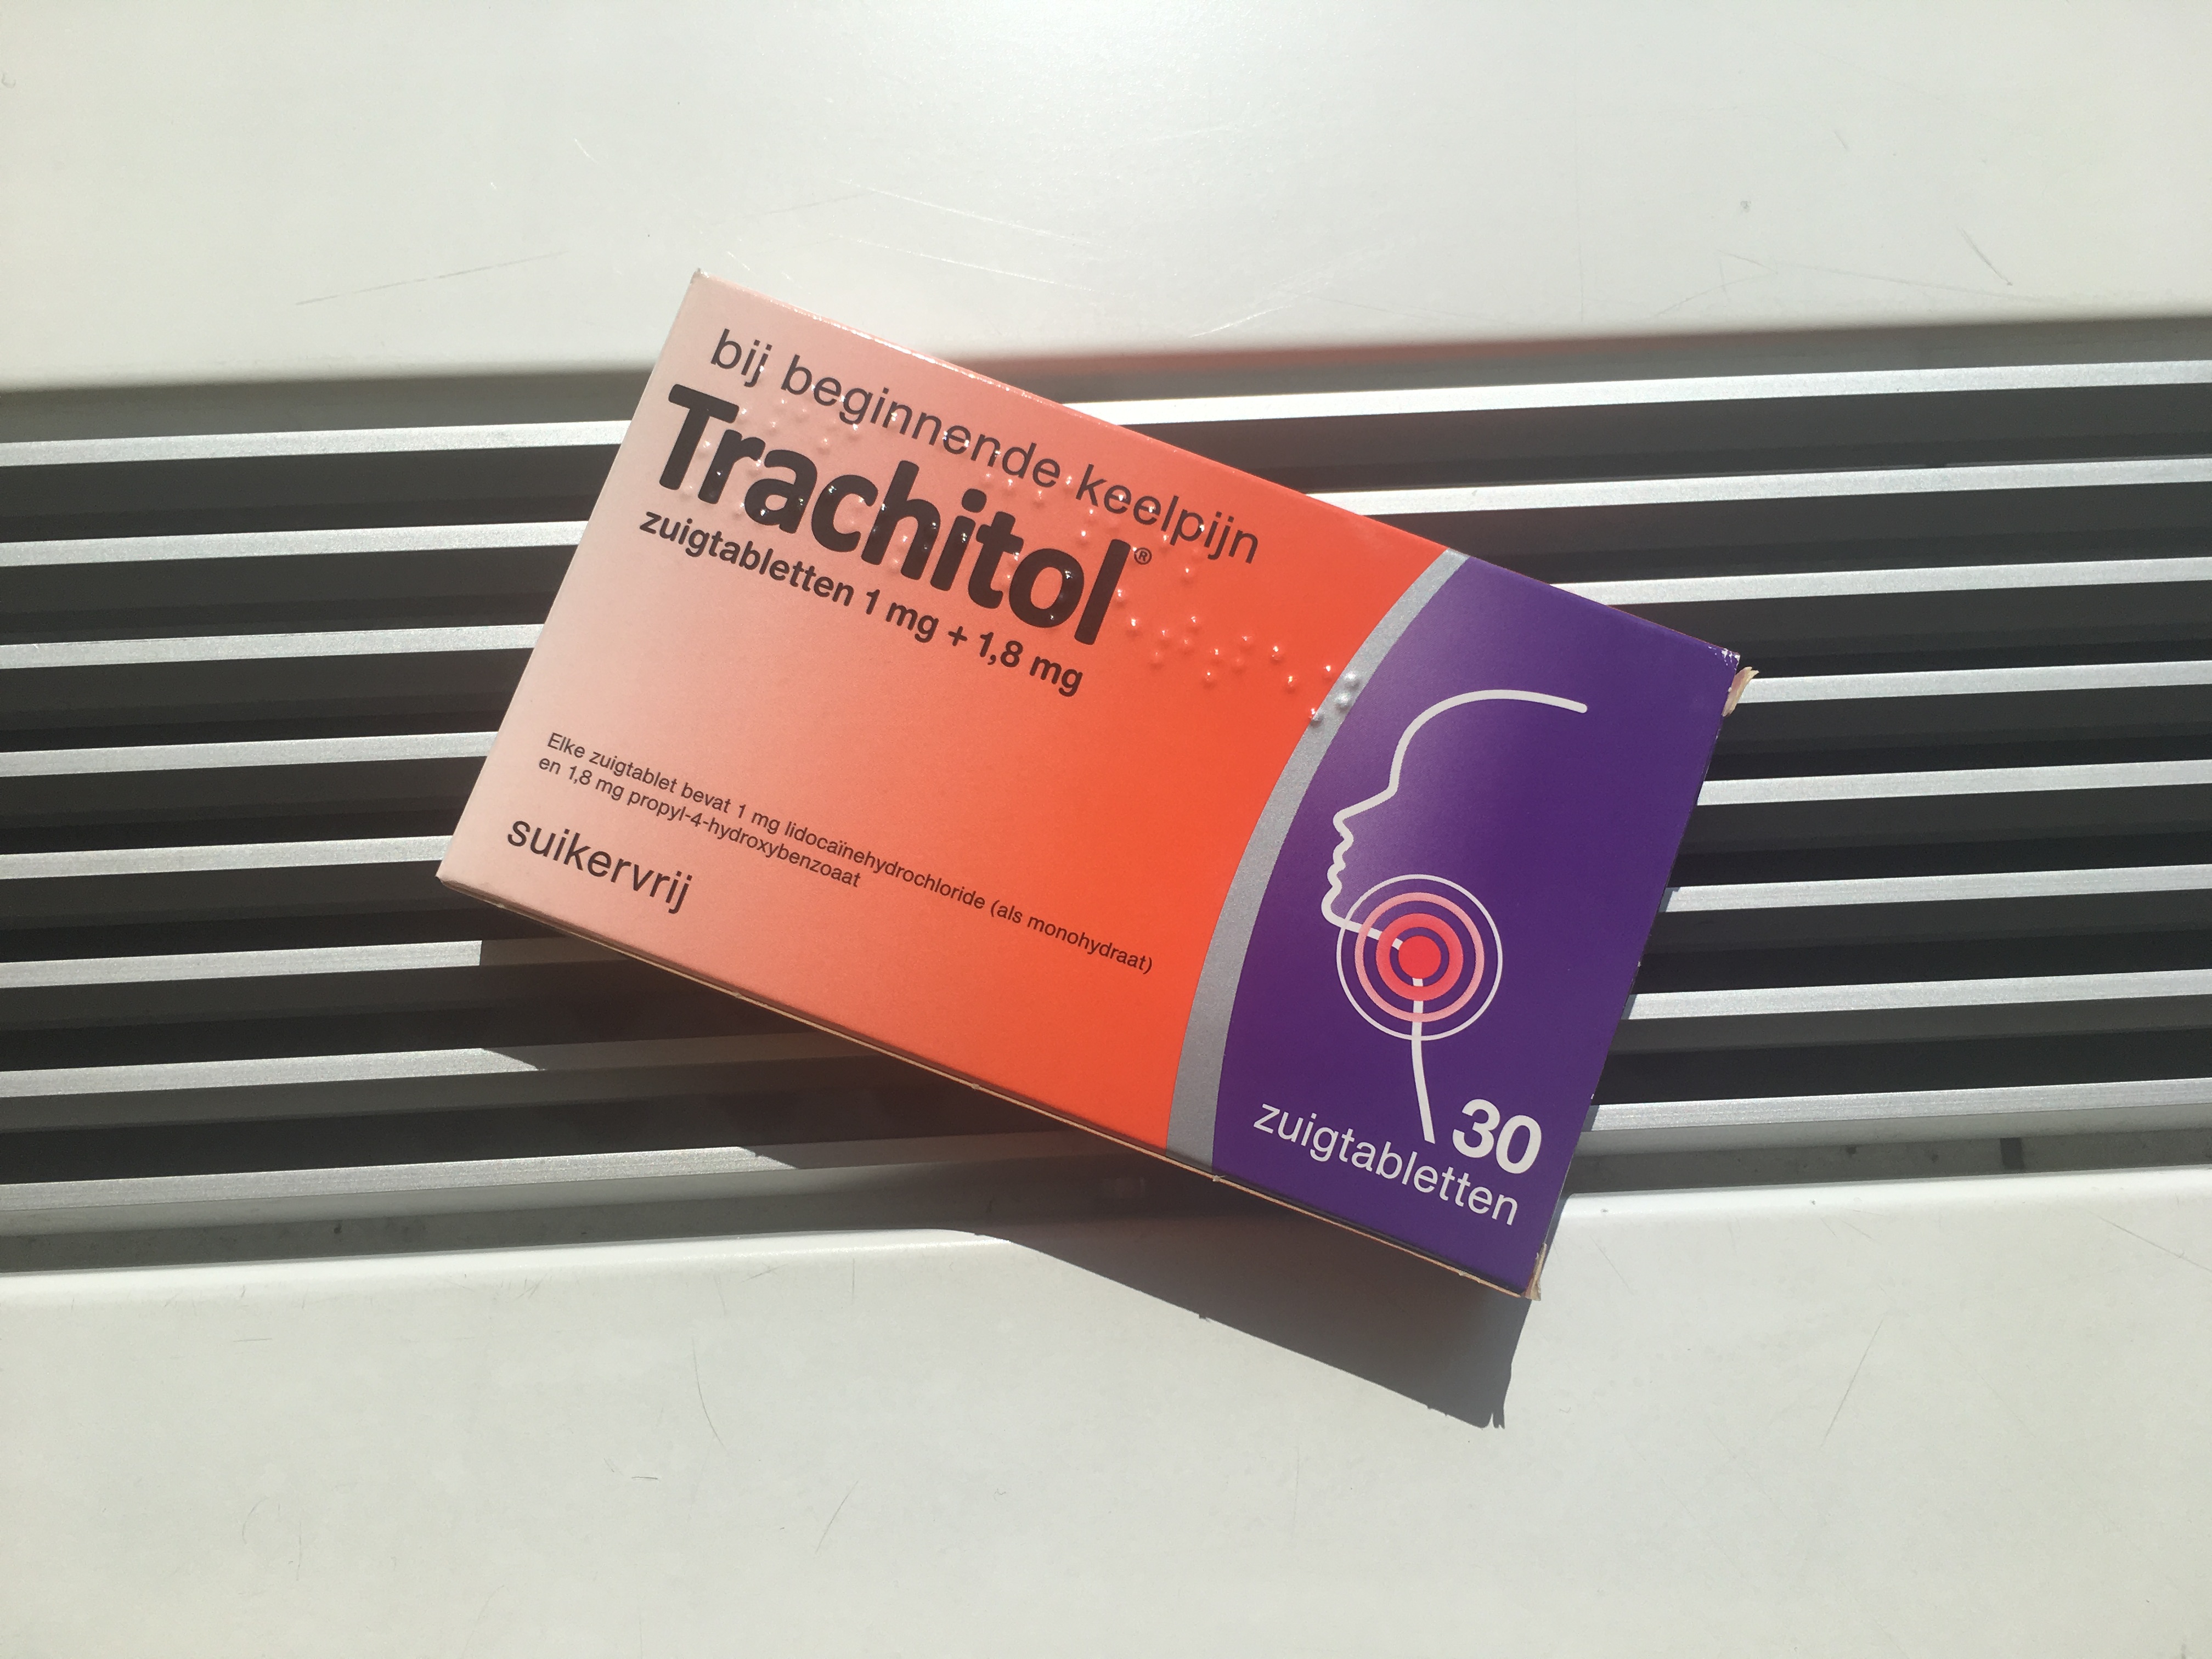 Dit is waarom het doosje van Trachitol oranje-paars is